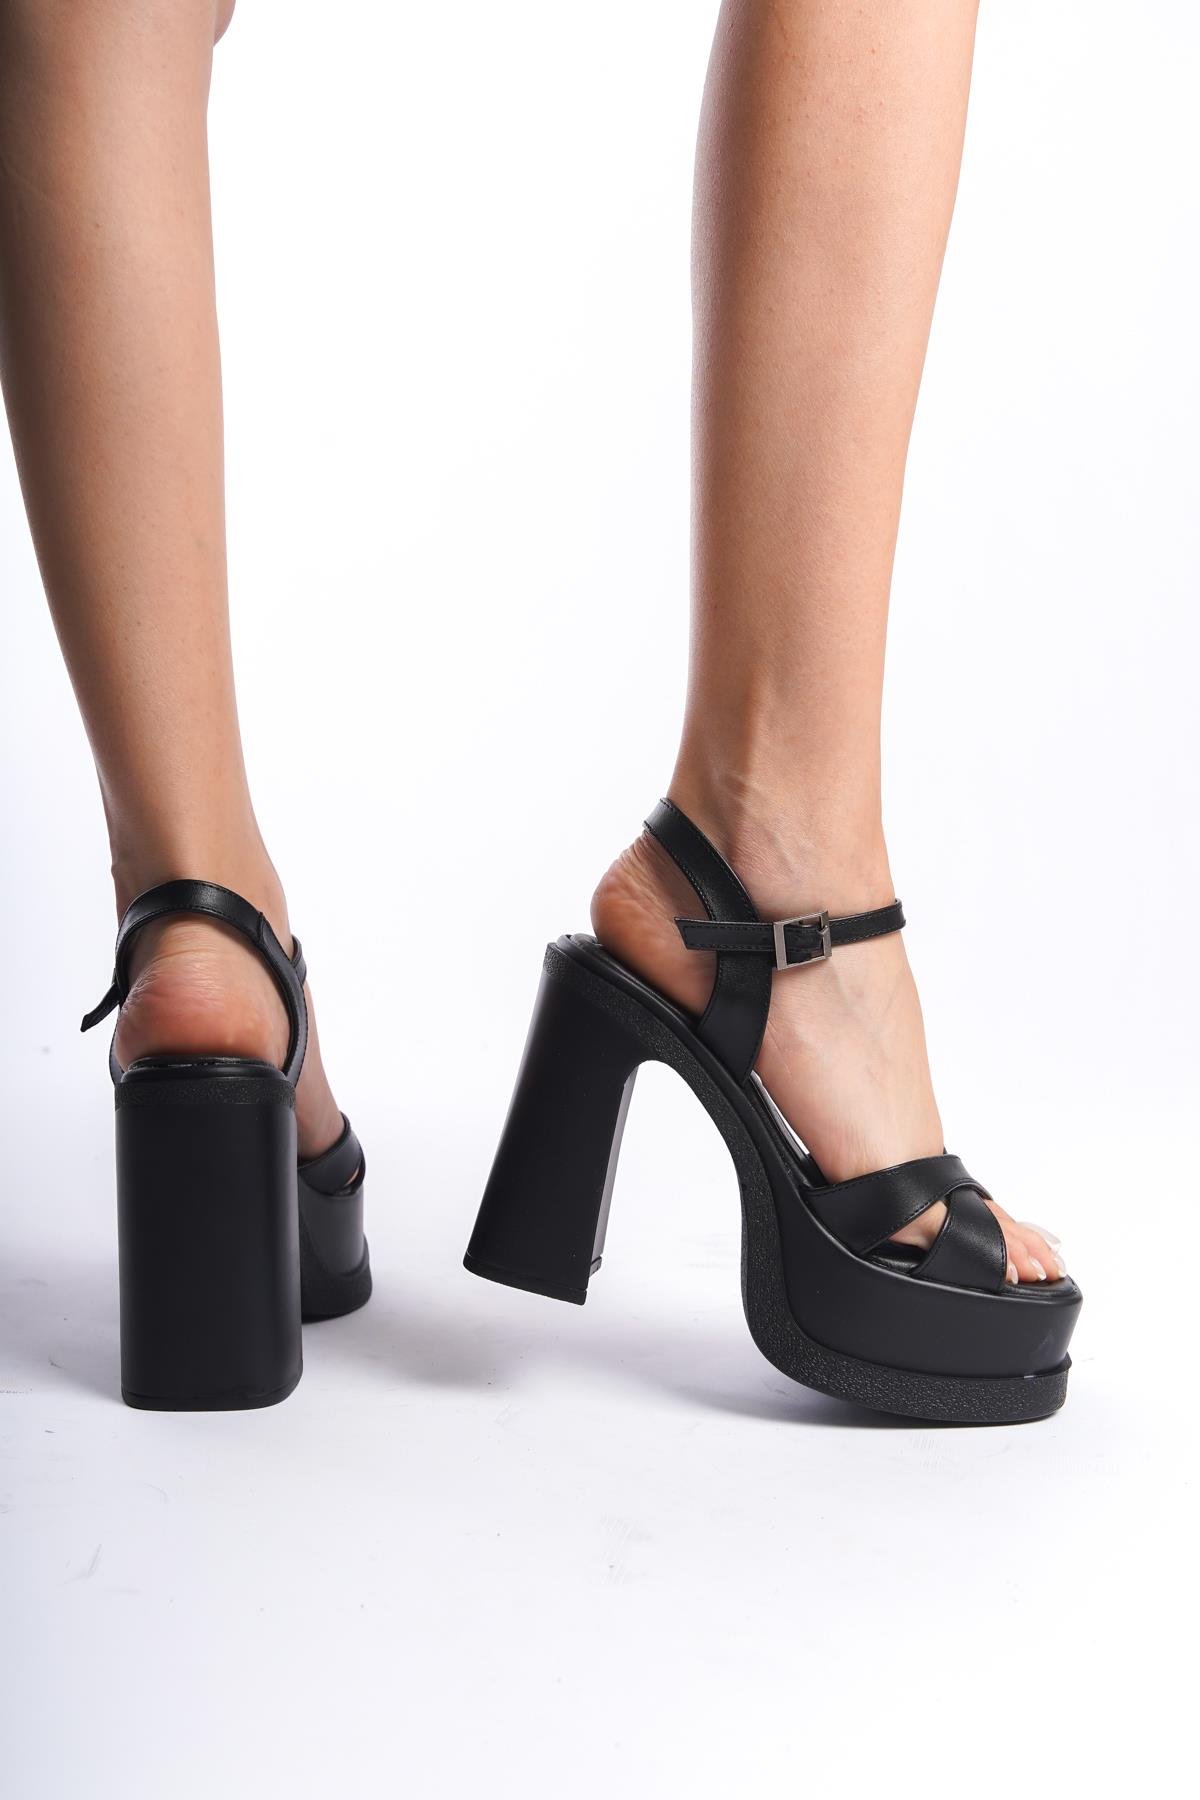 Kadın Keyli Siyah Cilt Çapraz Bantlı (12 cm ) Platform Topuklu Ayakkabı